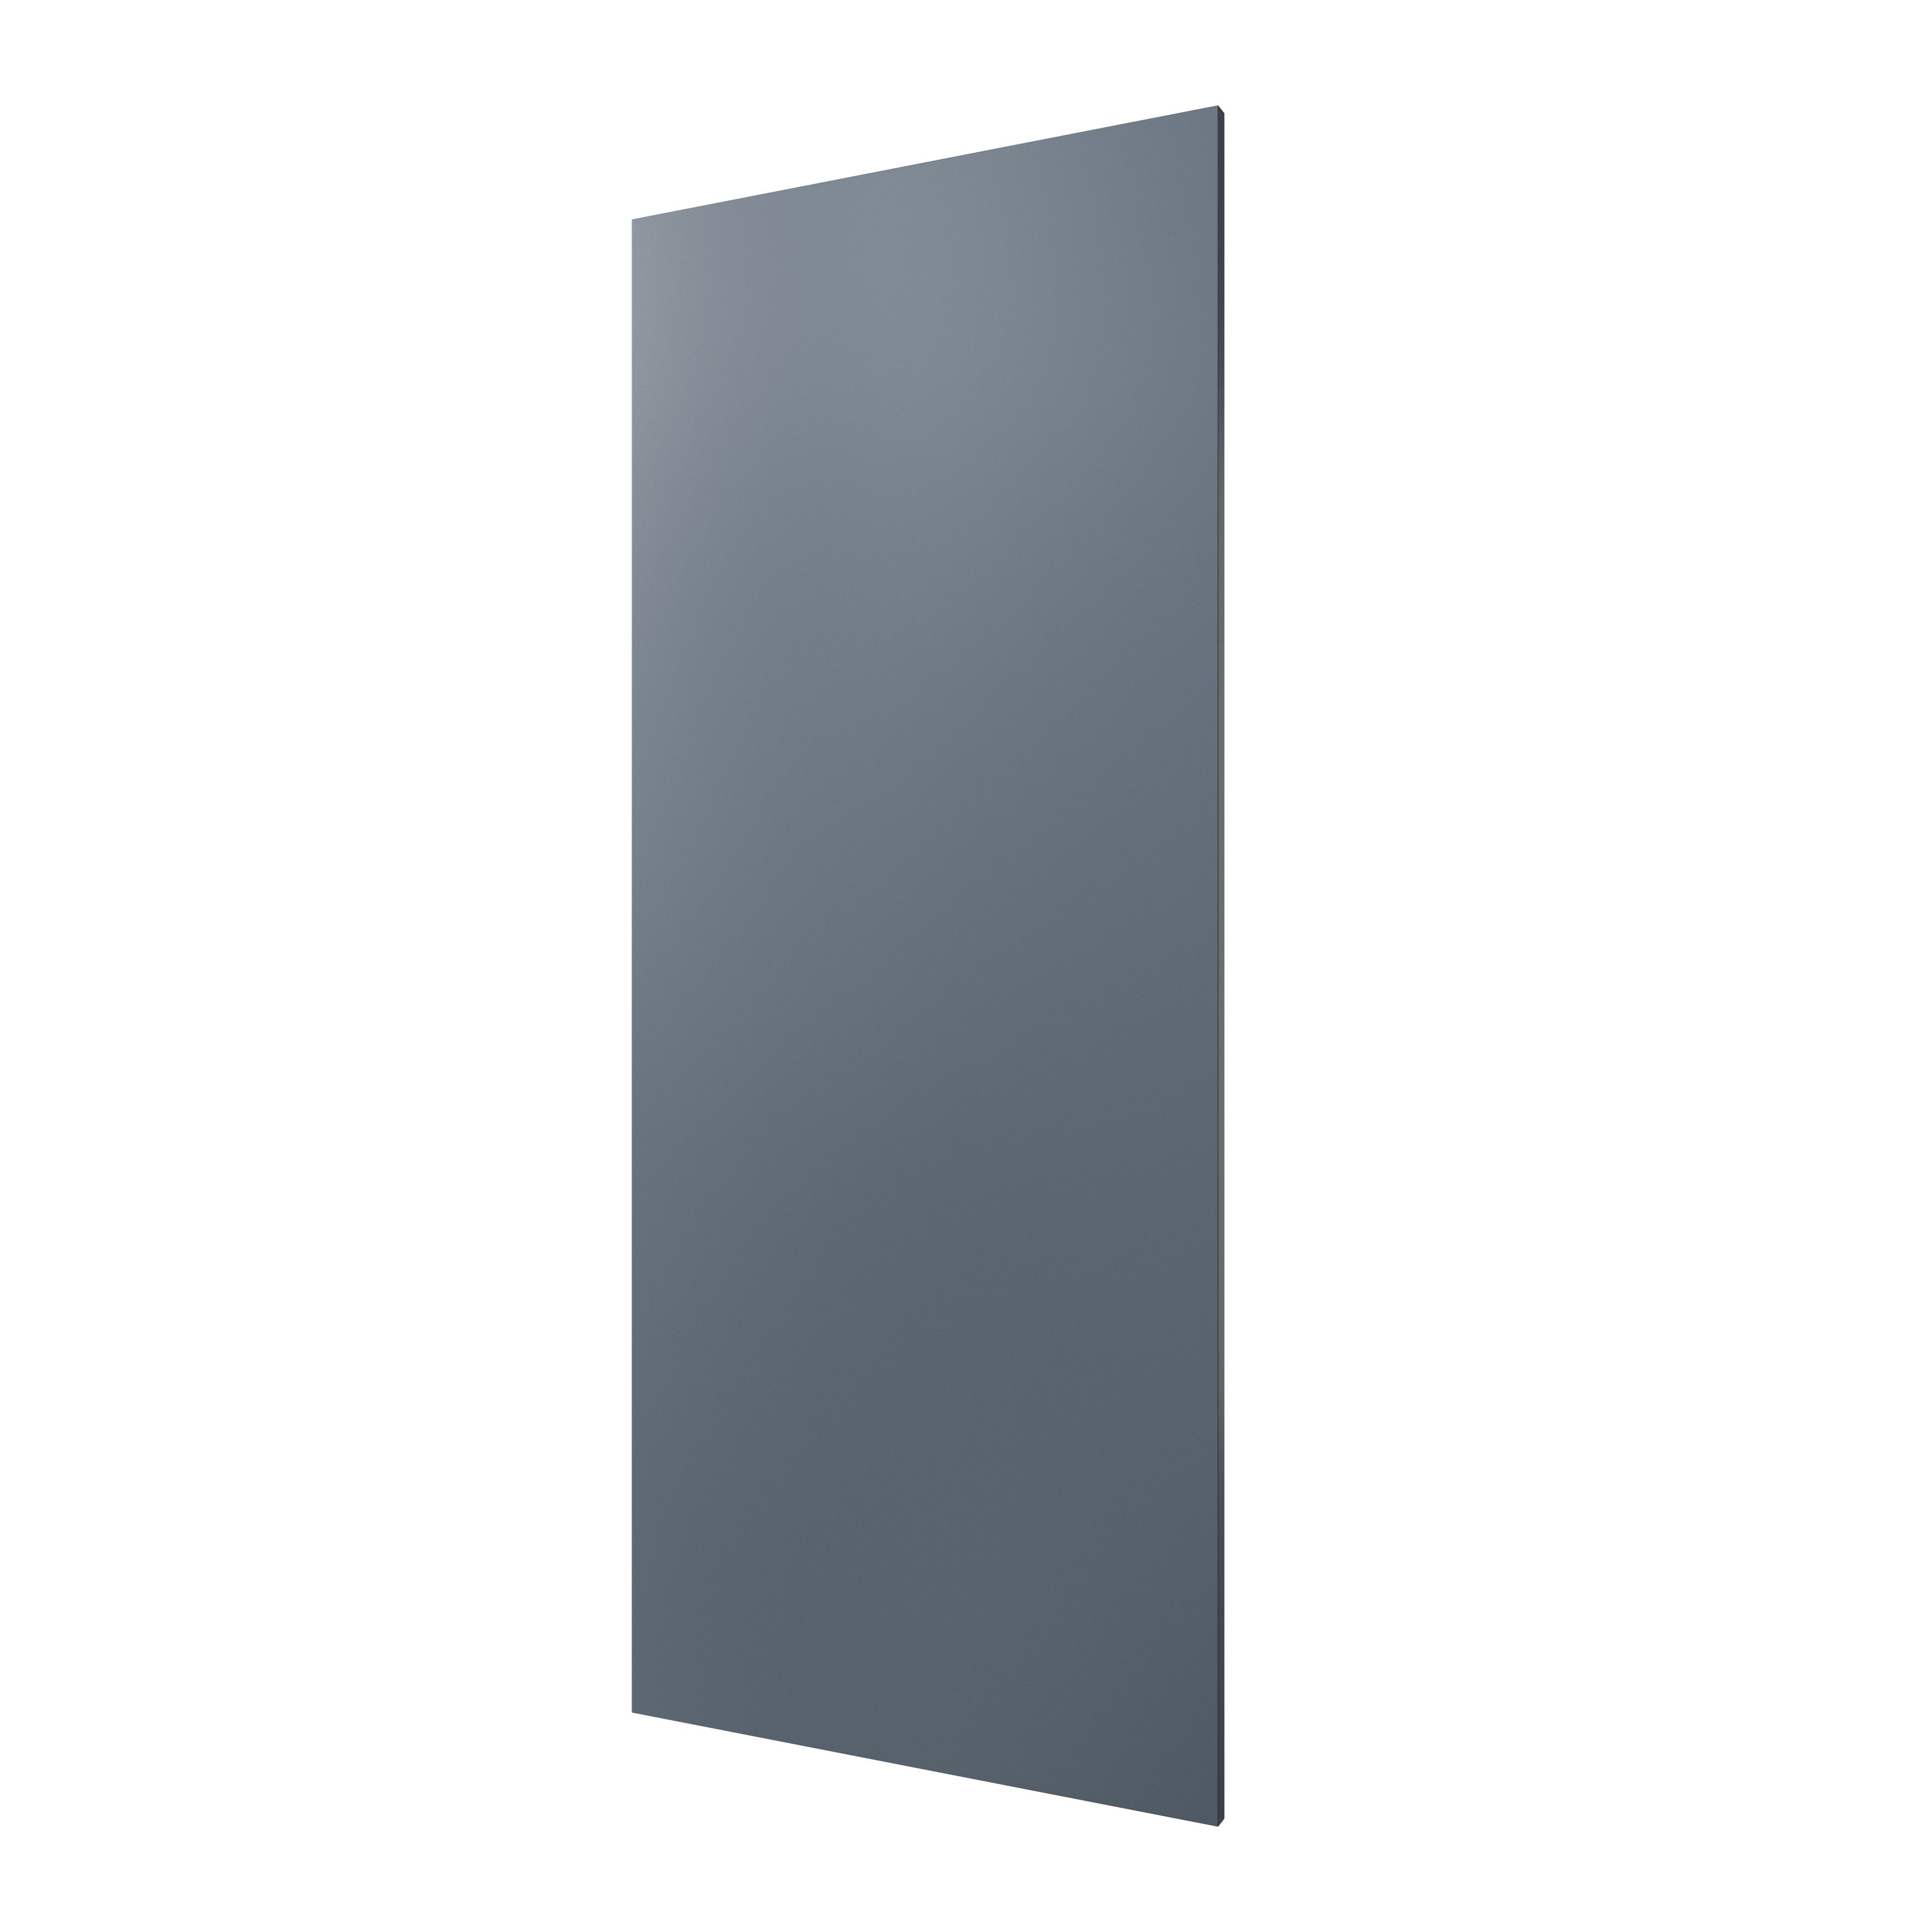 GoodHome Alisma Matt blue slab 70:30 Tall larder Cabinet door (W)600mm (H)1467mm (T)18mm